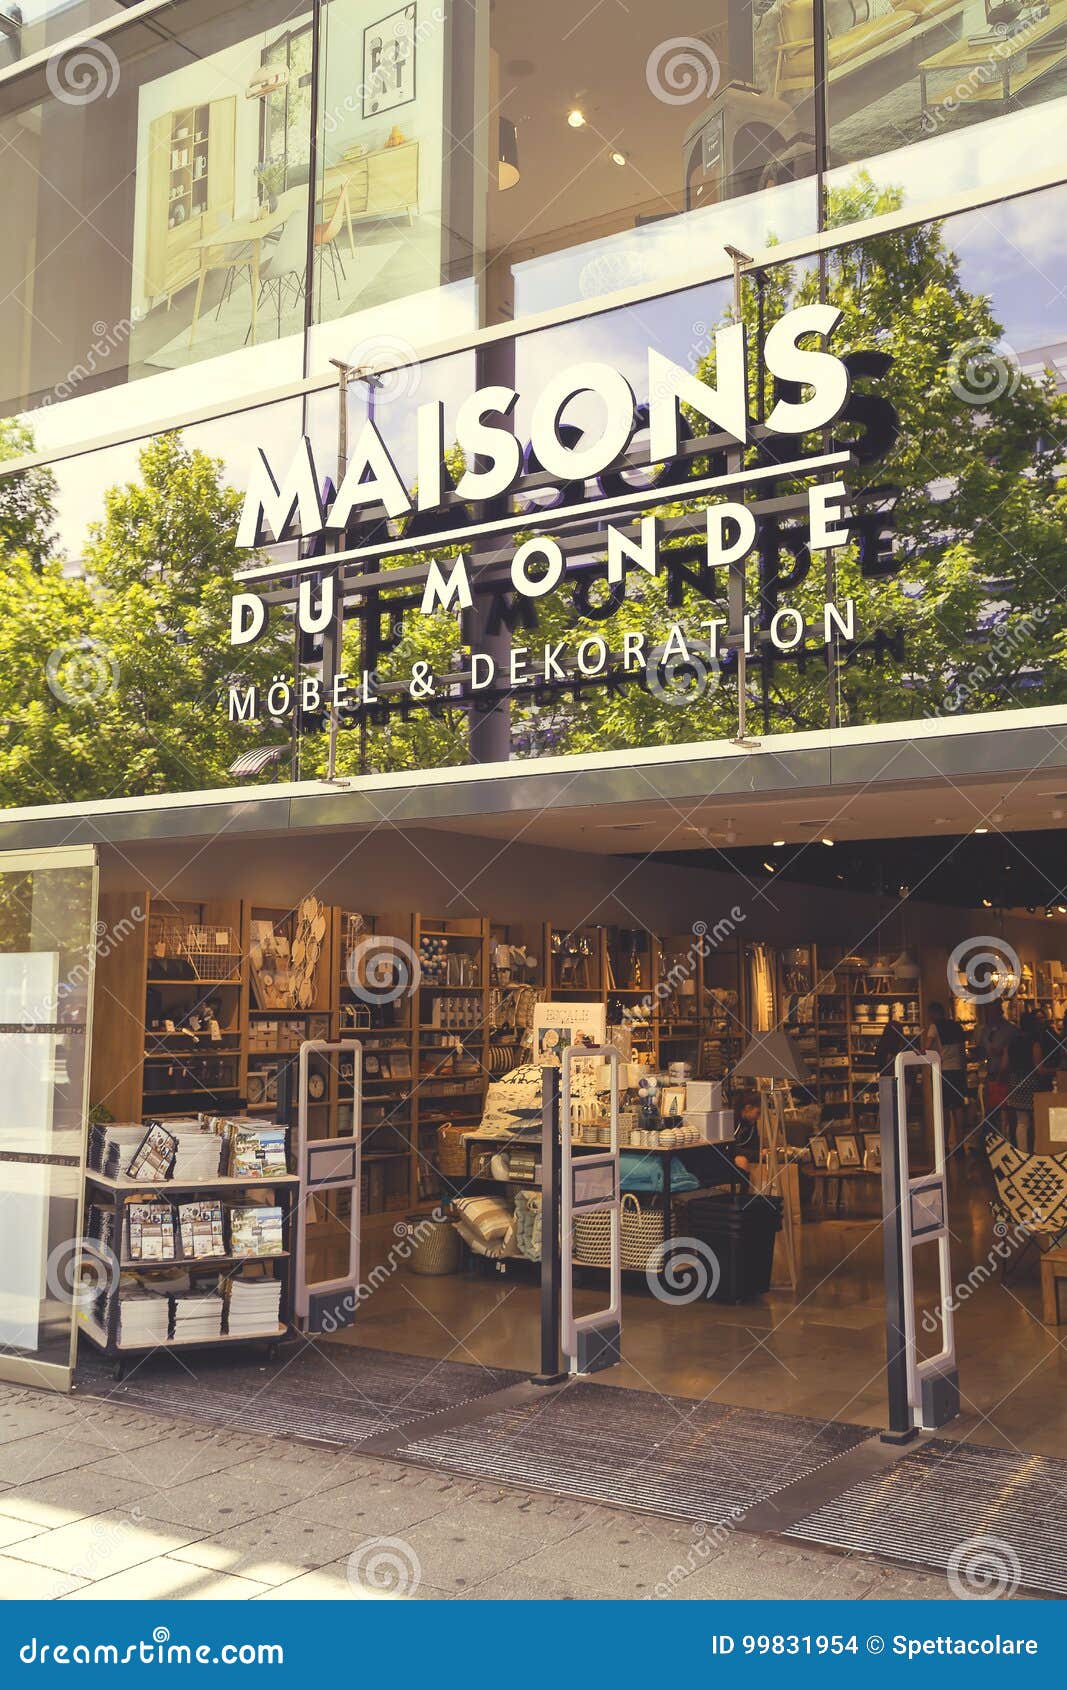 Maison Du Monde, decoration and furniture store